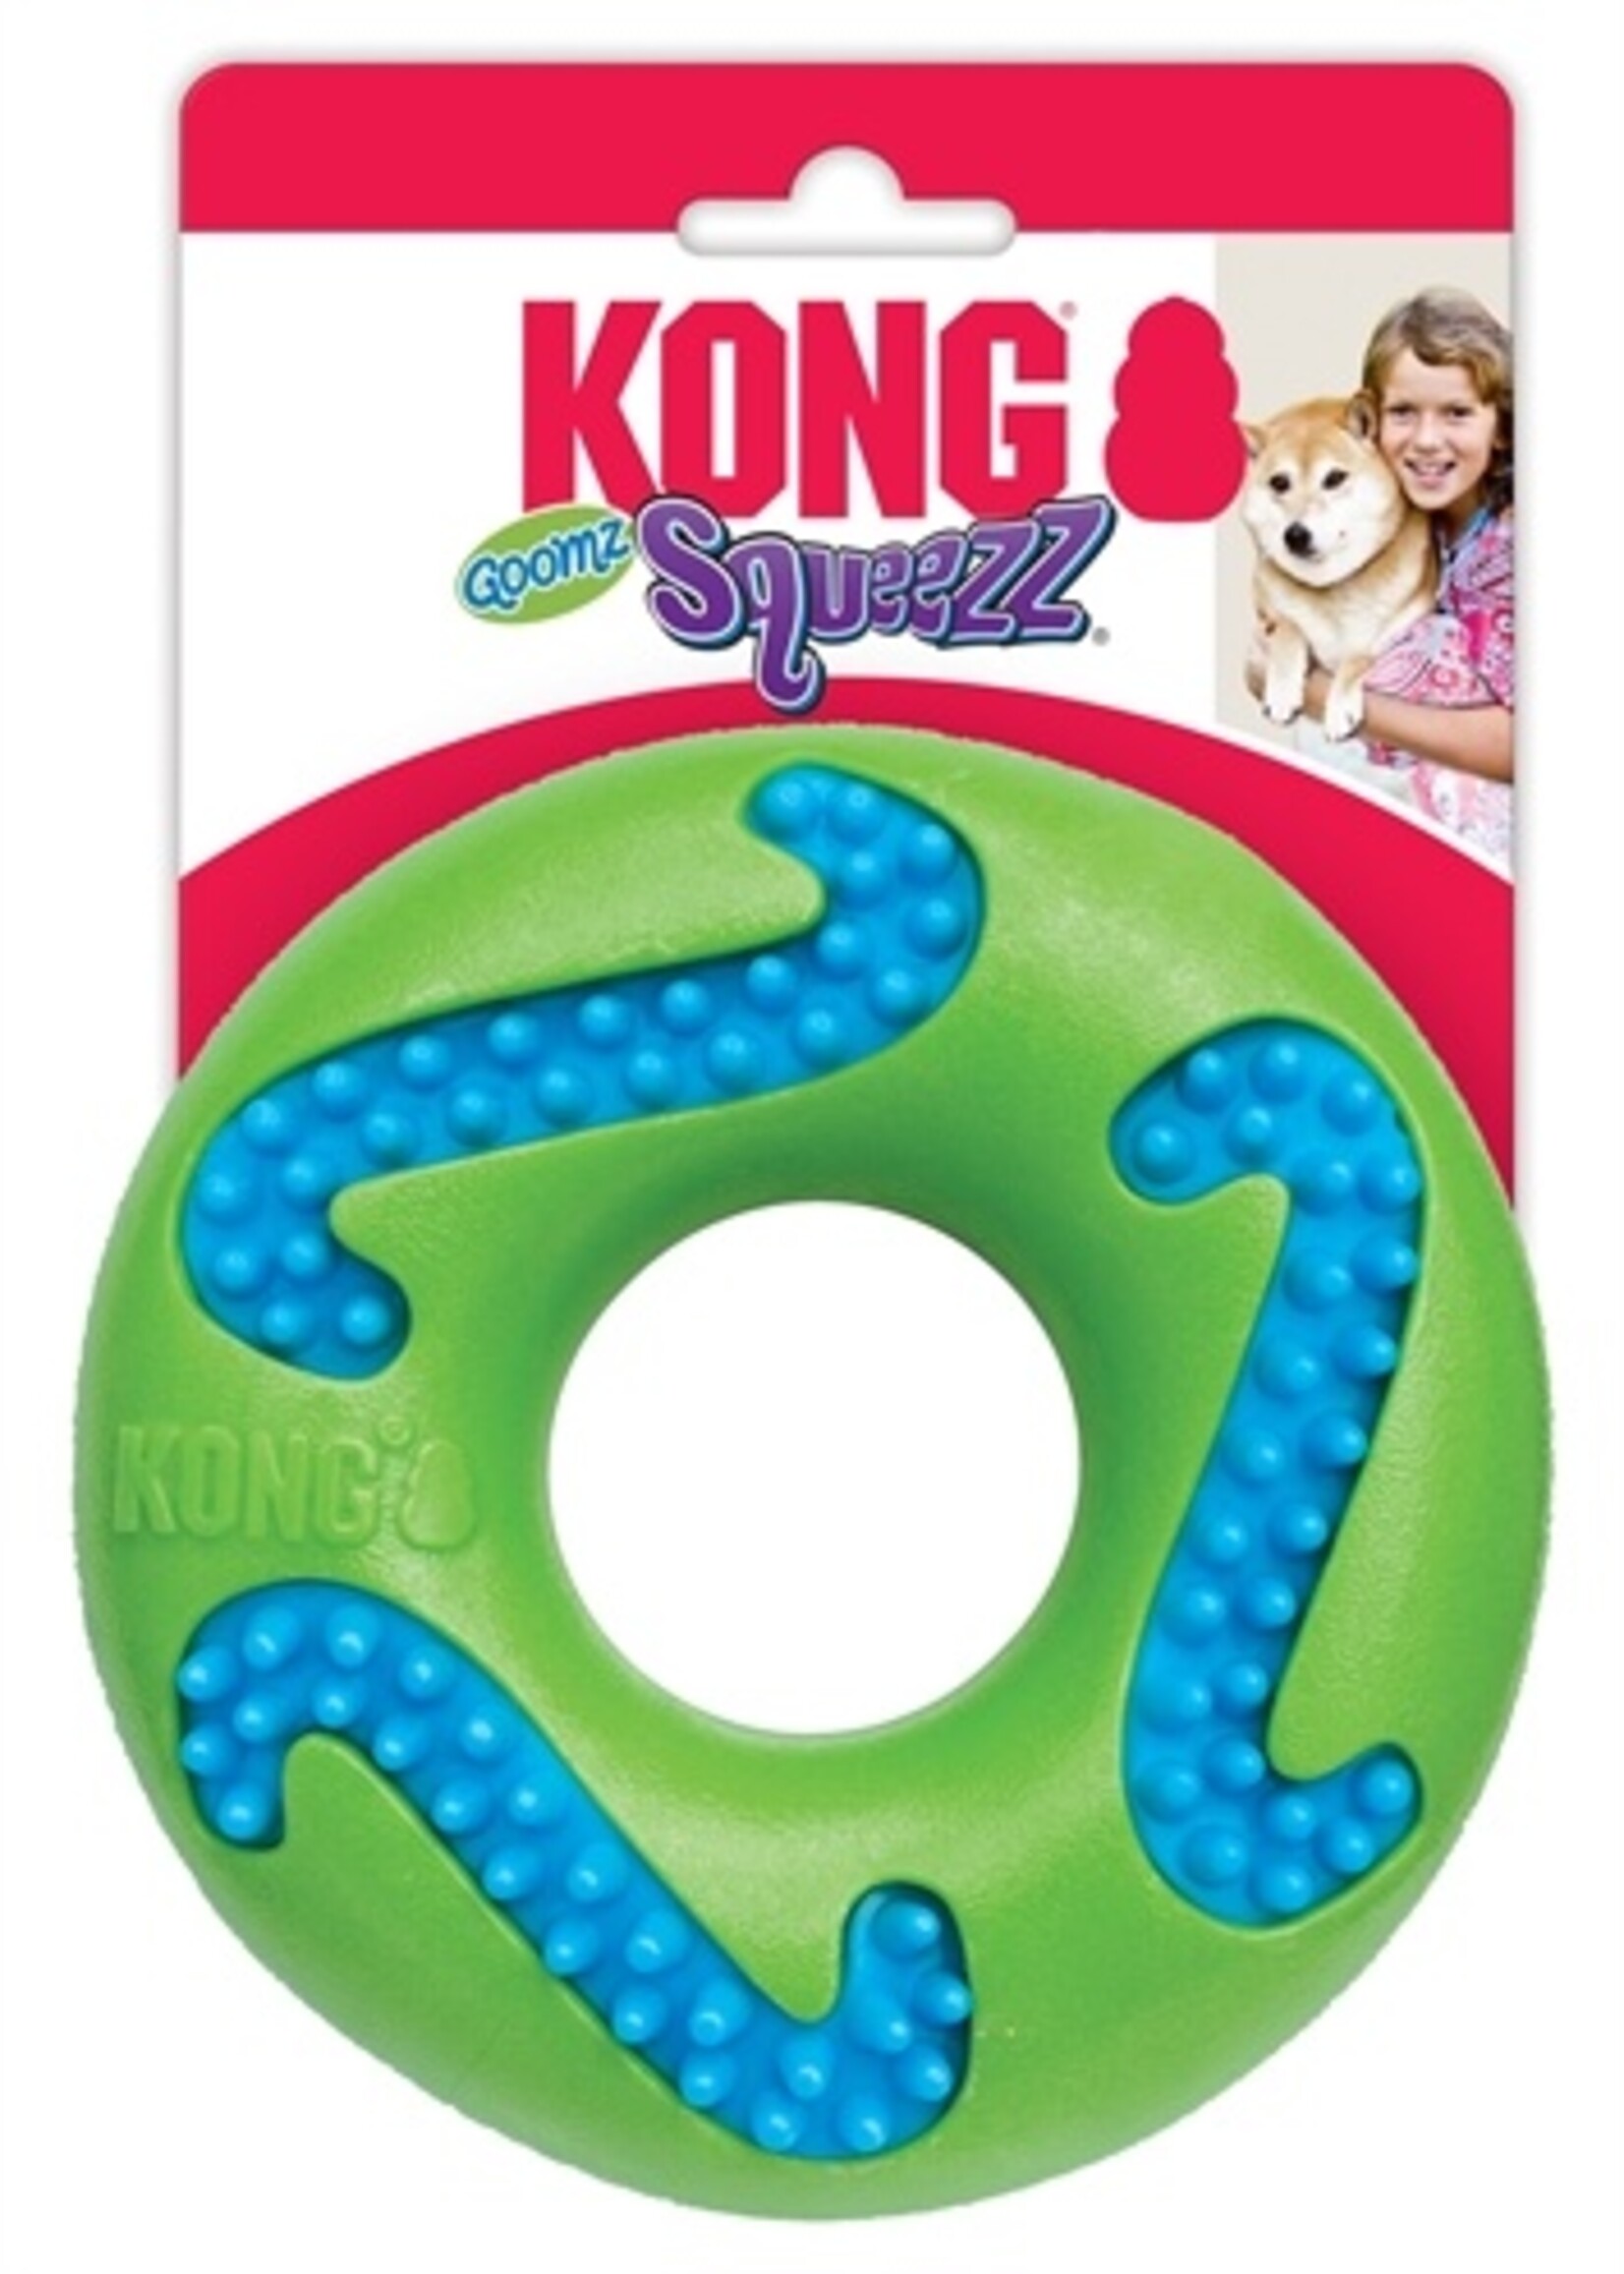 Kong Kong squeezz goomz ring